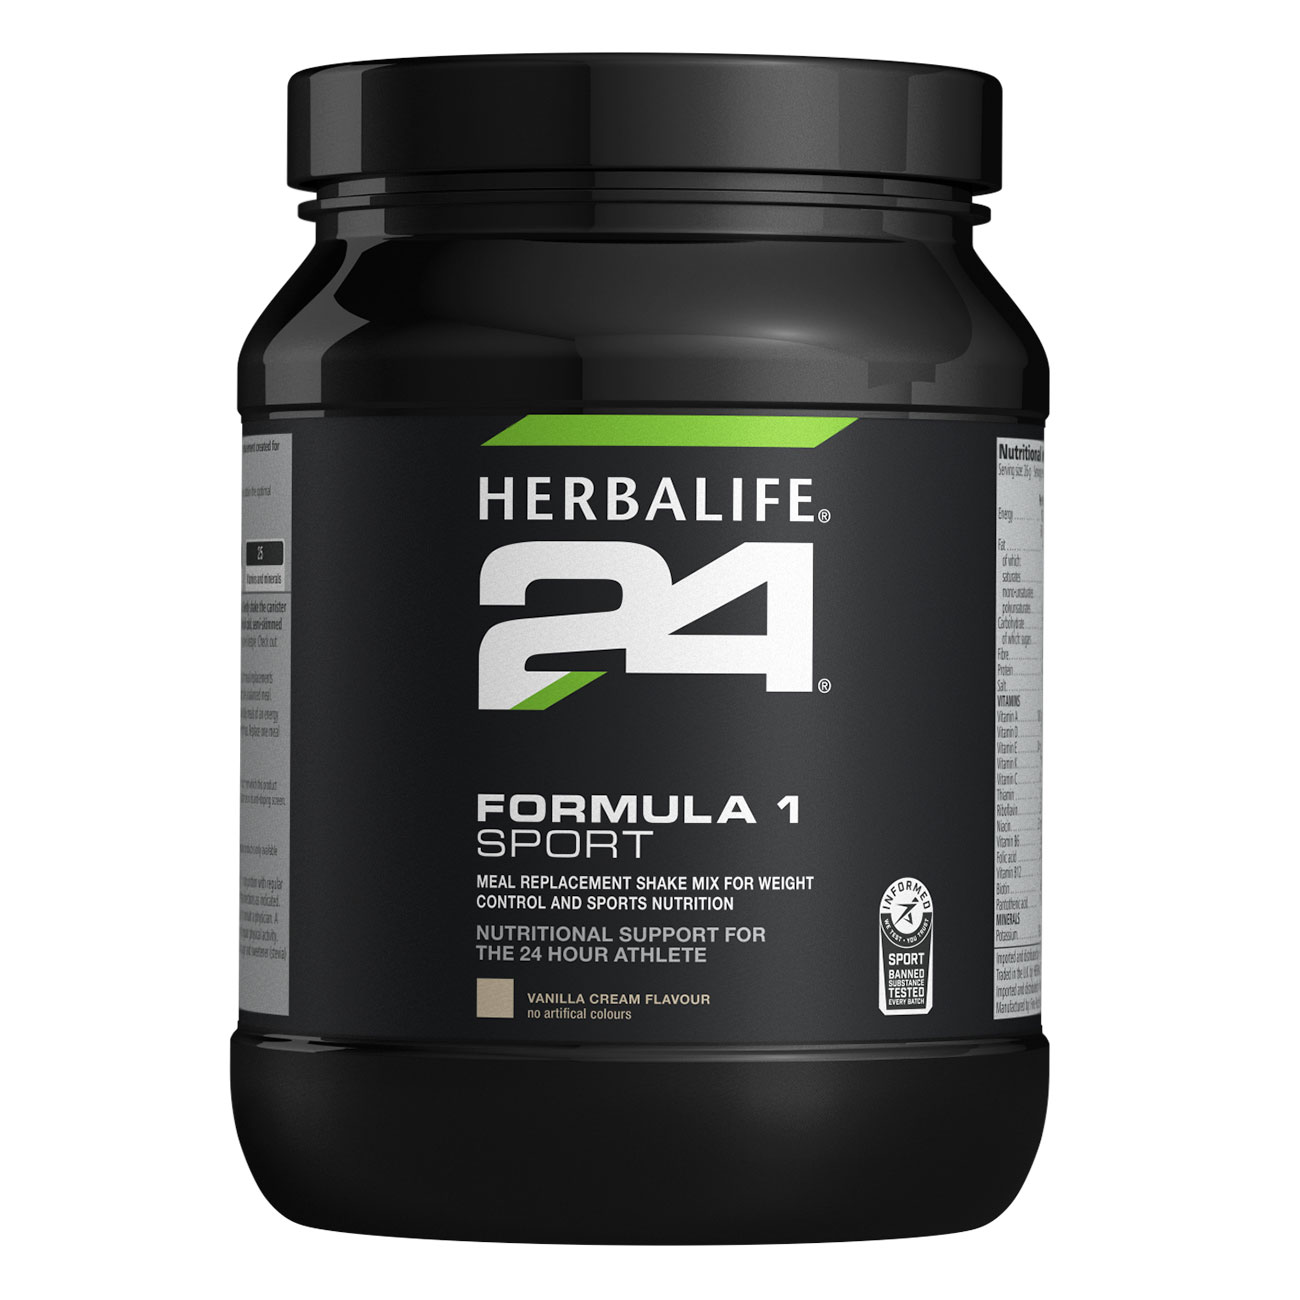 Herbalife24® Formula 1 Sport Protein Shake Vanilla Cream product shot